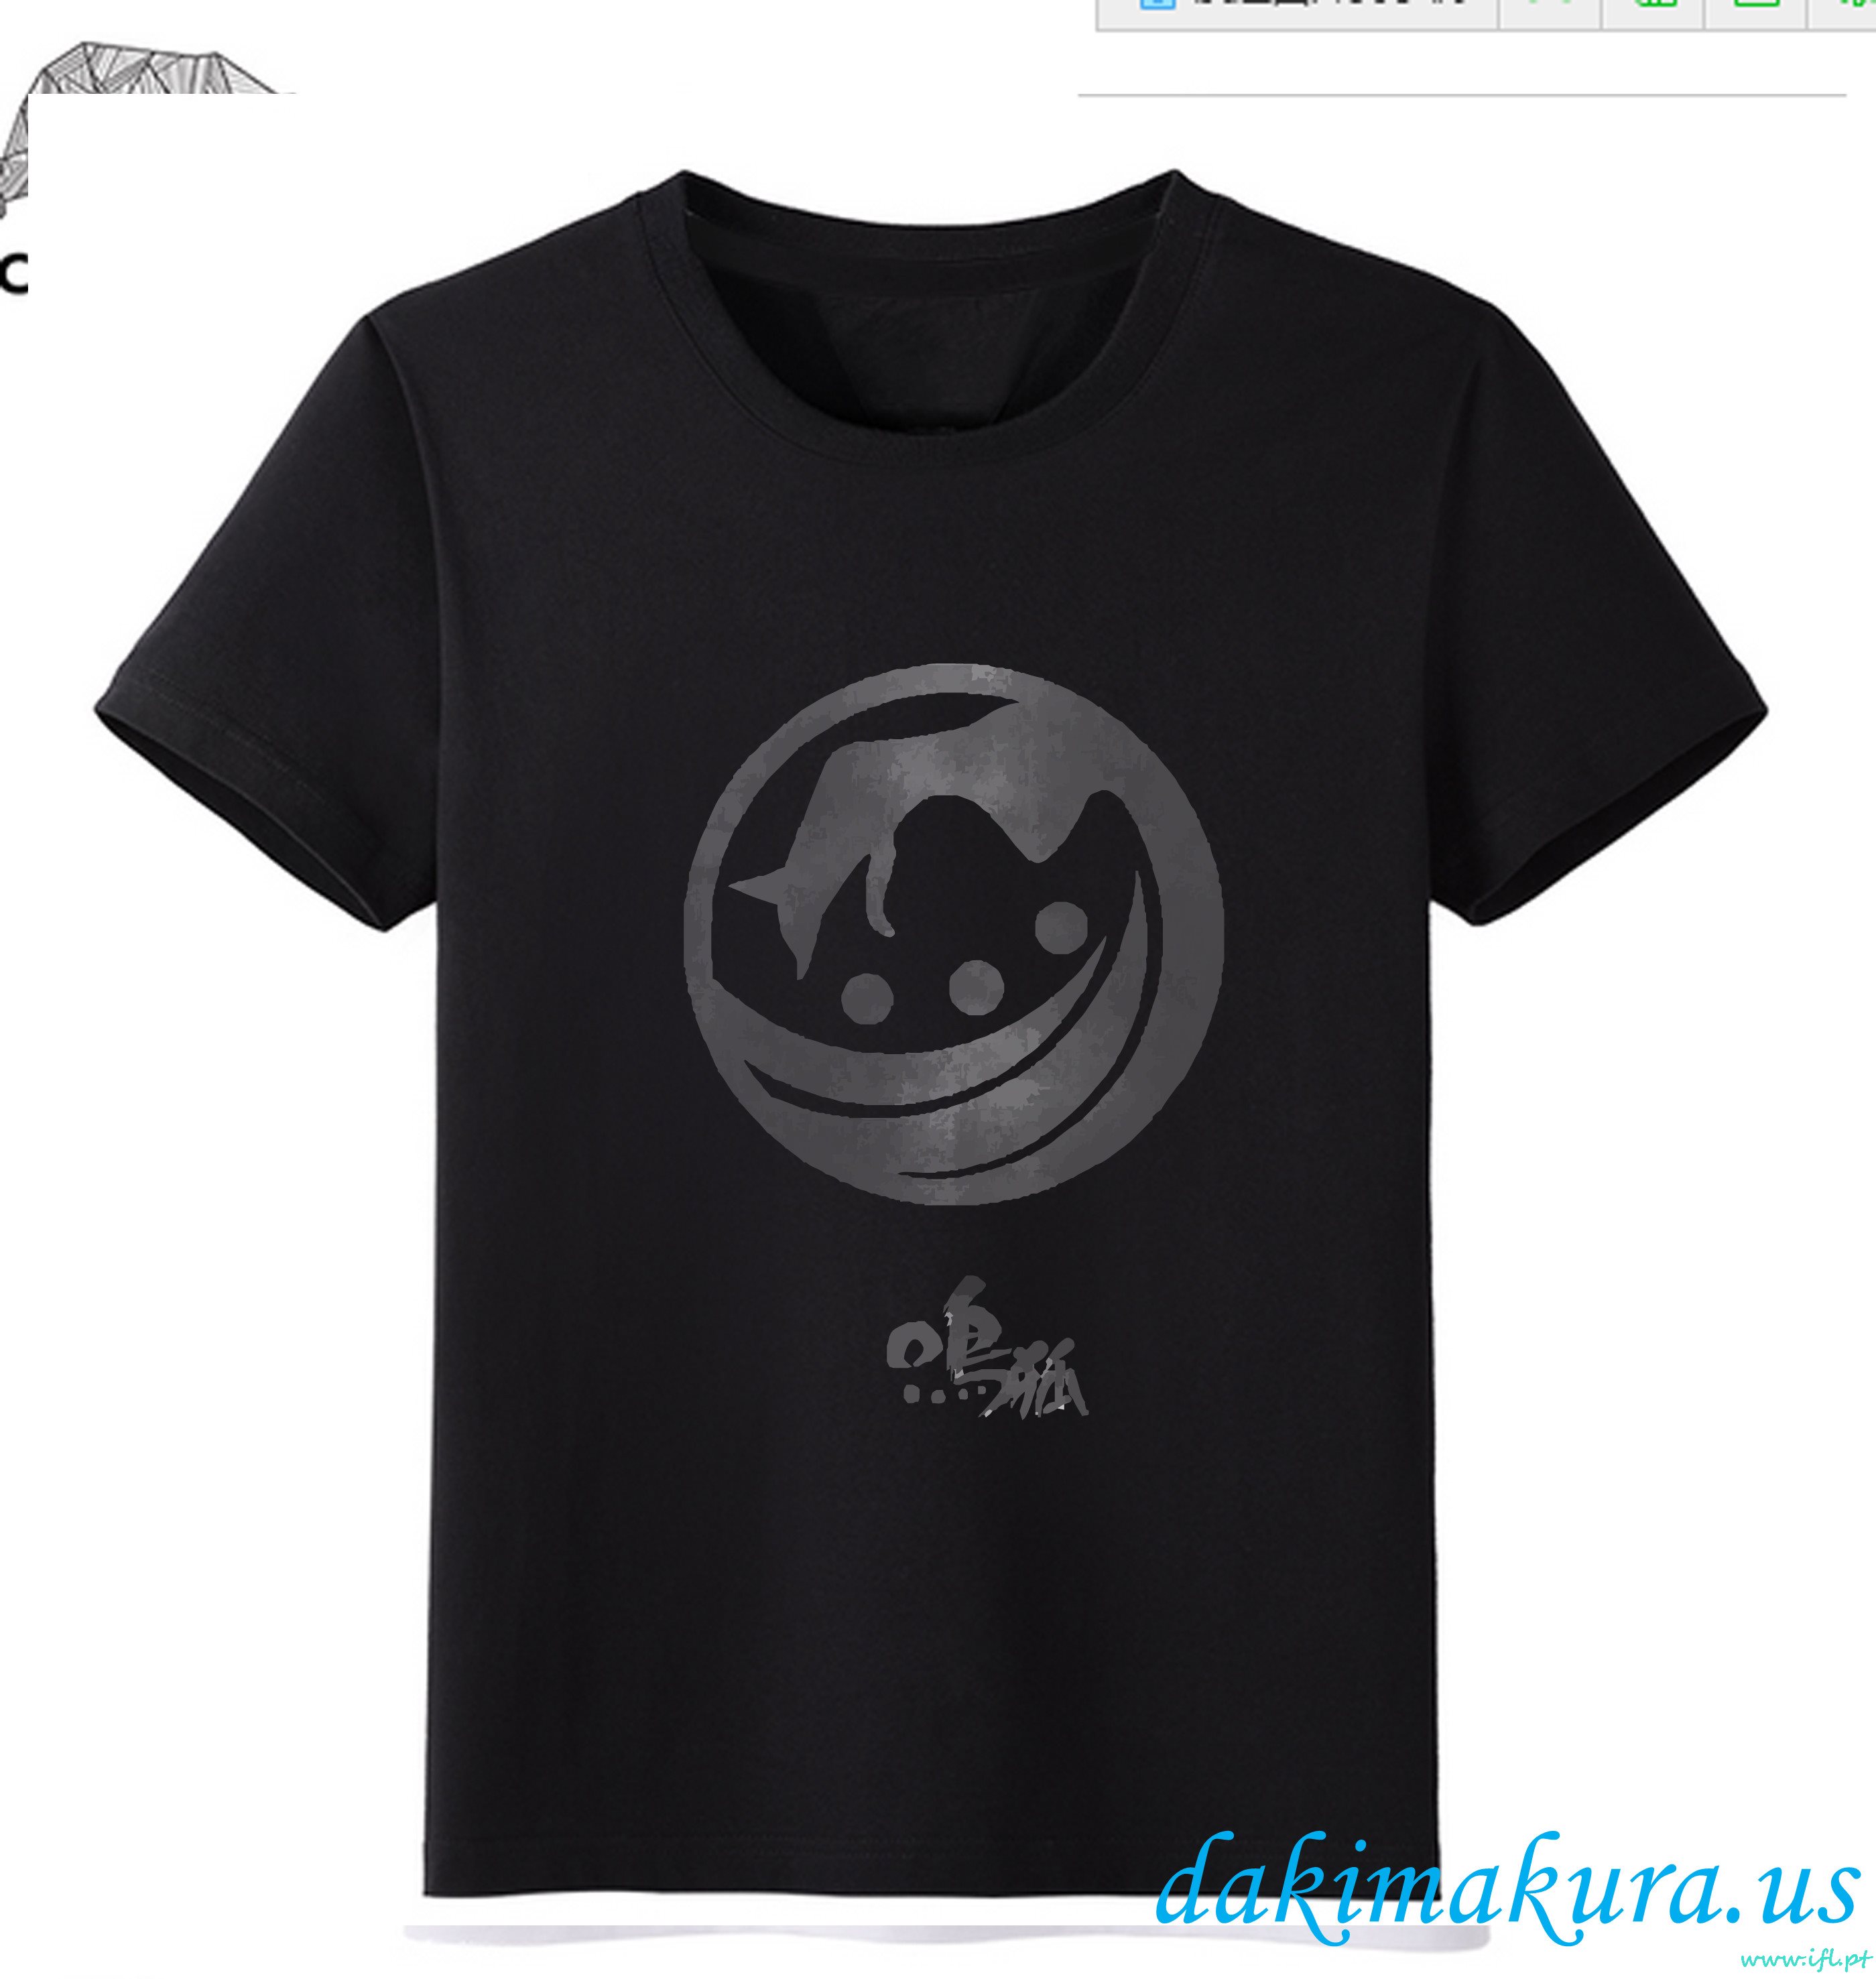 Billig Svart - Touk Ranbu Online Menn Anime Mote T-skjorter Fra Kina Fabrikken